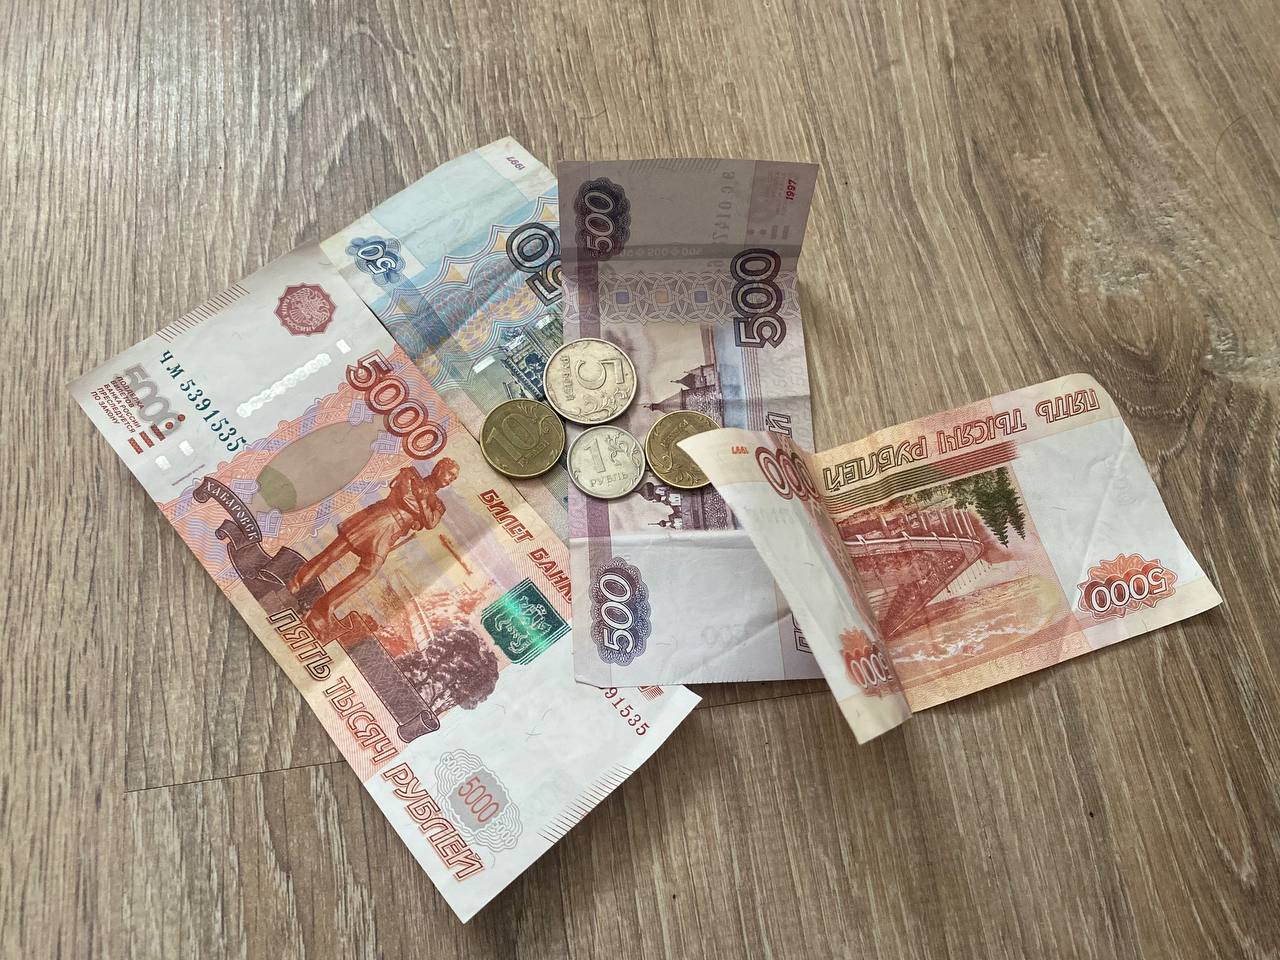 500 000 рублей в долг